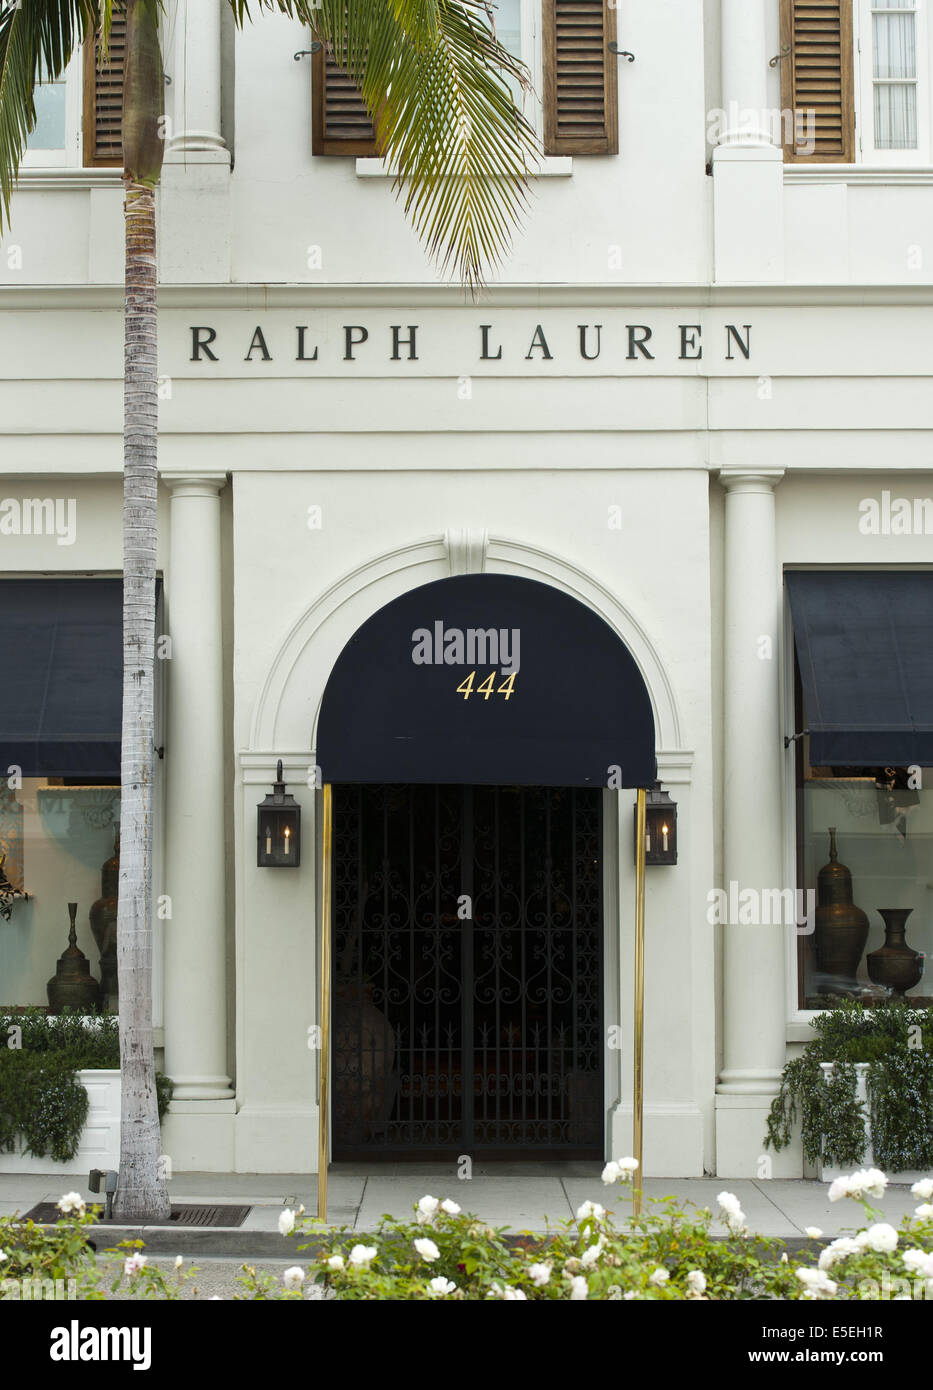 23 juin 2014 - Los Angeles/Los Angeles, Californie, États-Unis - Ralph  Lauren a ouvert sa première boutique, 'POLO', sur Rodeo Drive en 1971.  Lauren, travaillant comme vendeurs, conçu sa propre cravate en